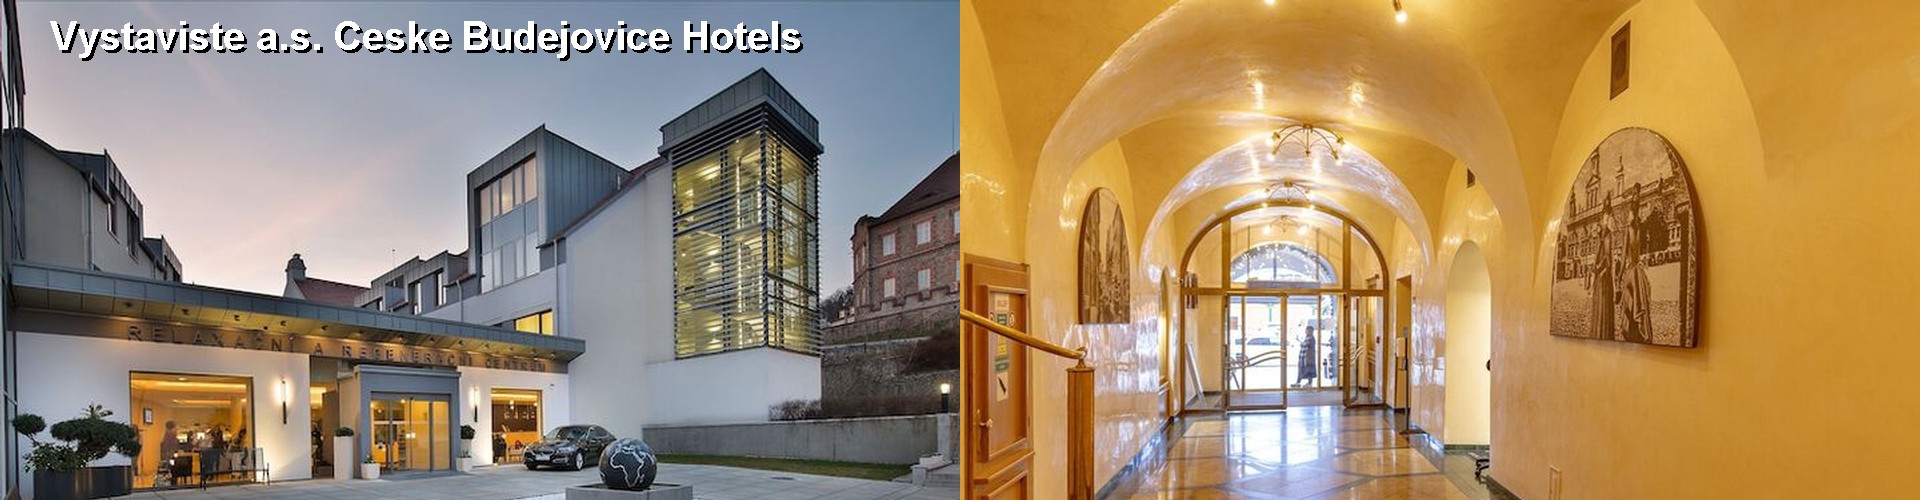 4 Best Hotels near Vystaviste a.s. Ceske Budejovice